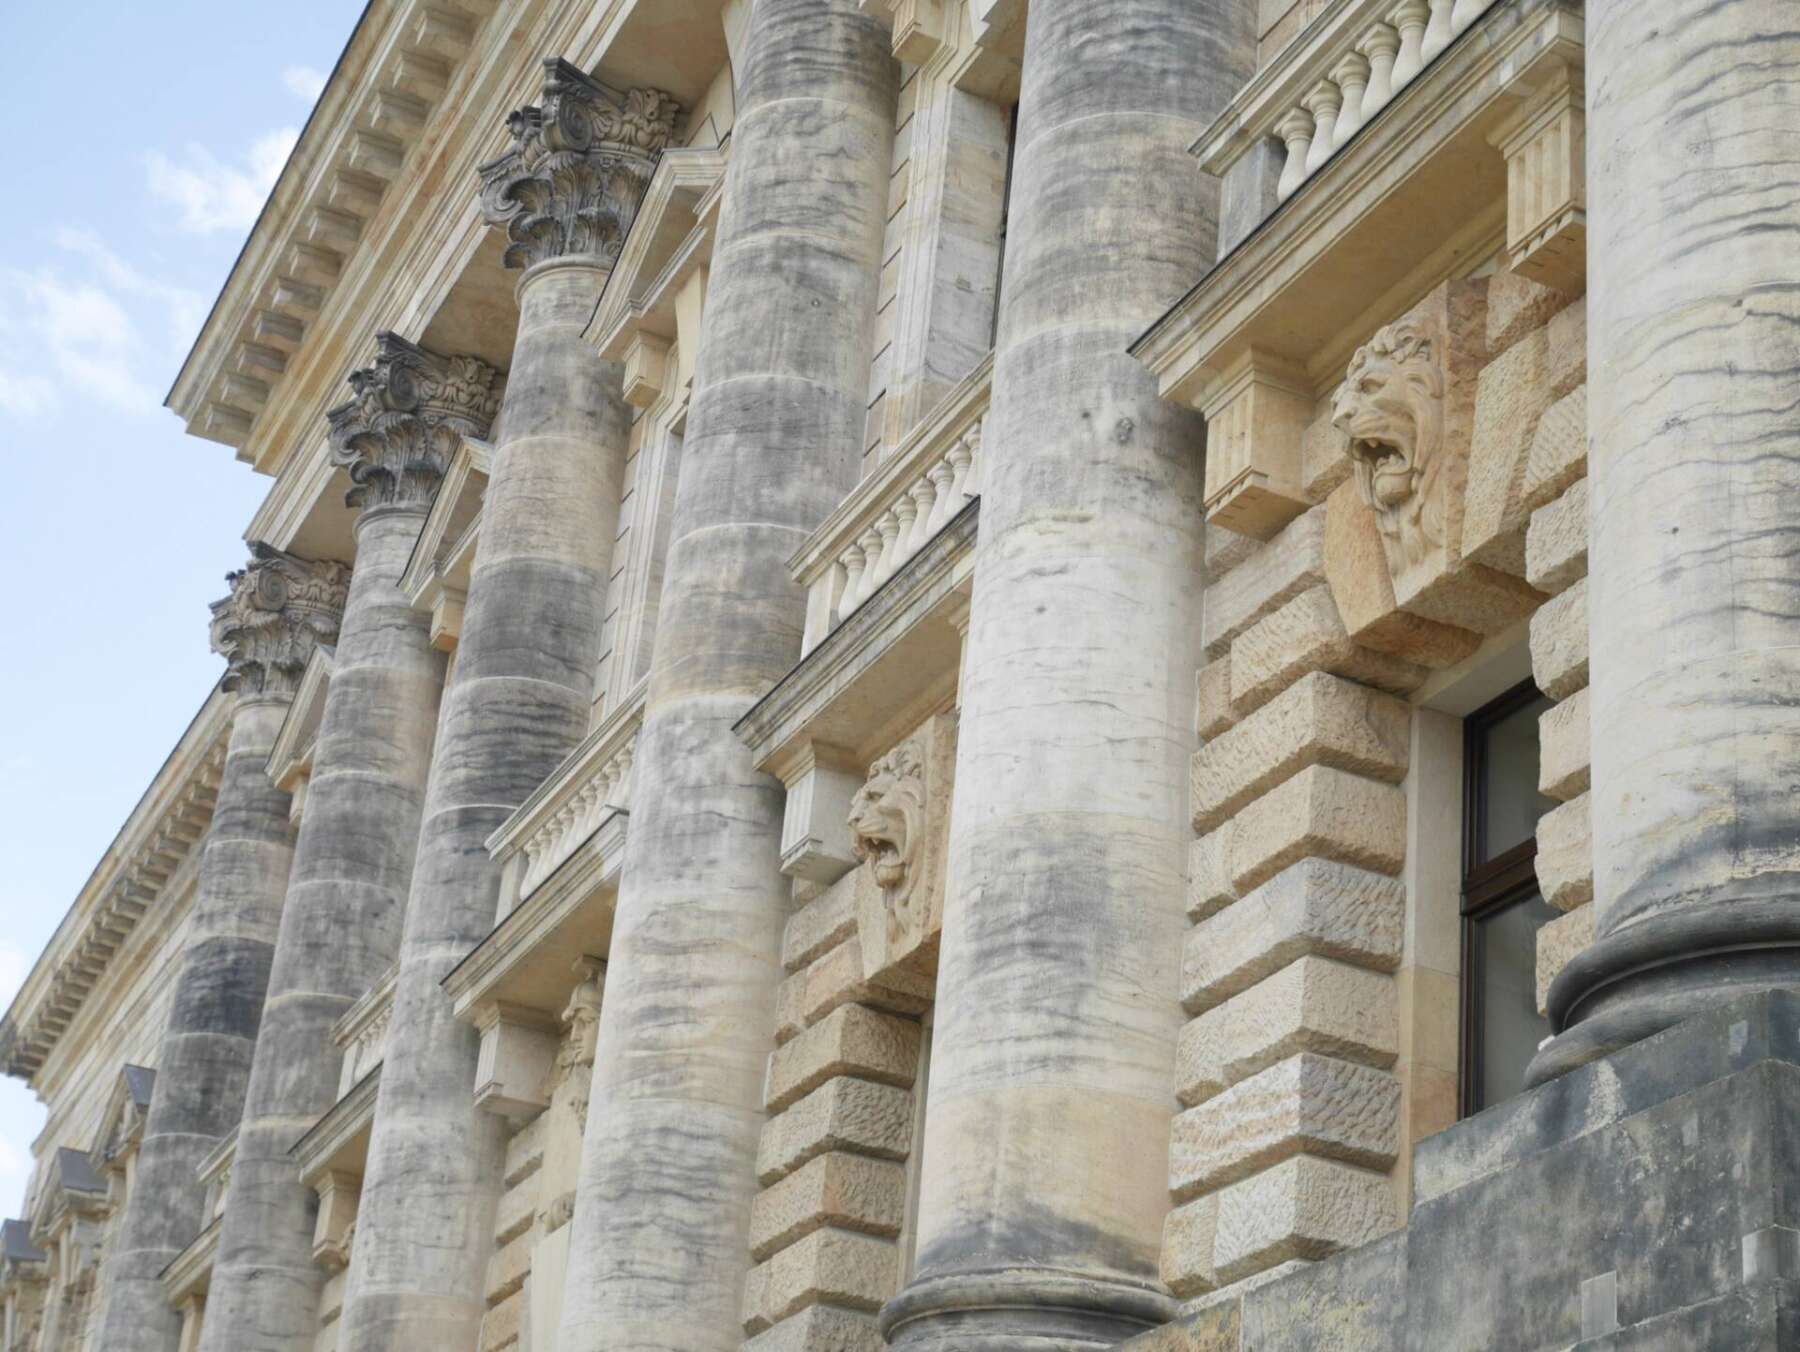 ศาลปกครองกลางแห่งเยอรมัน (Federal Administrative Court of Germany)